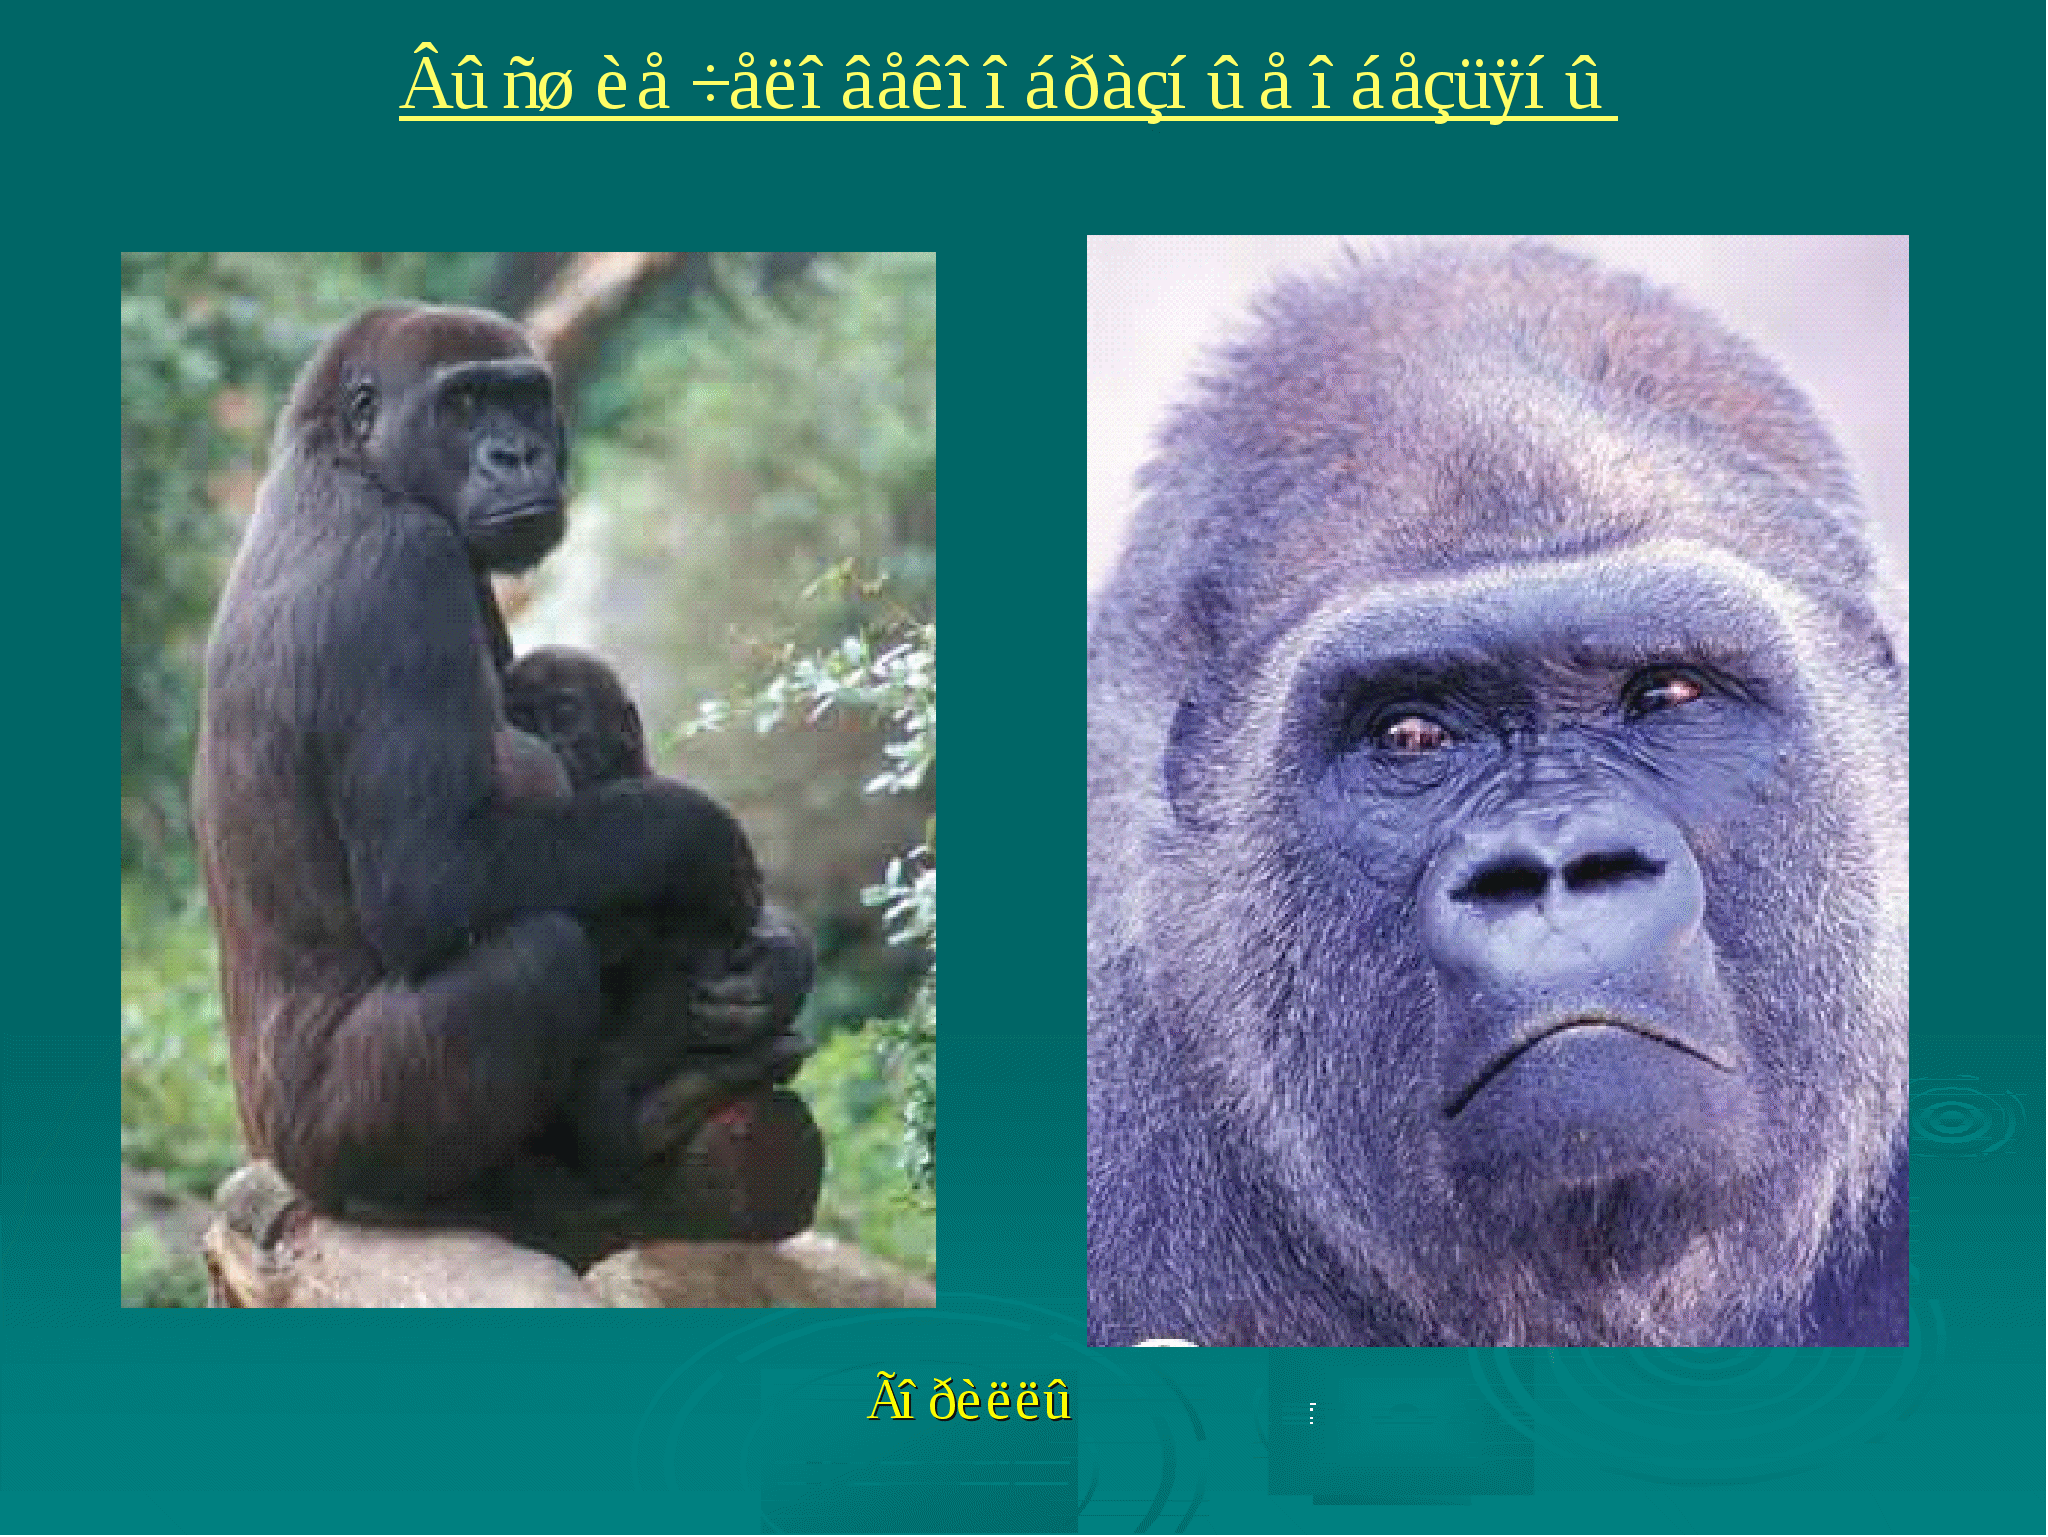 Самая человекообразная обезьяна. Человекообразные обезьяны гориллы. Приматы (человекообразные обезьяны). Шимпанзе человекообразные обезьяны. Презентация человекообразные приматы.